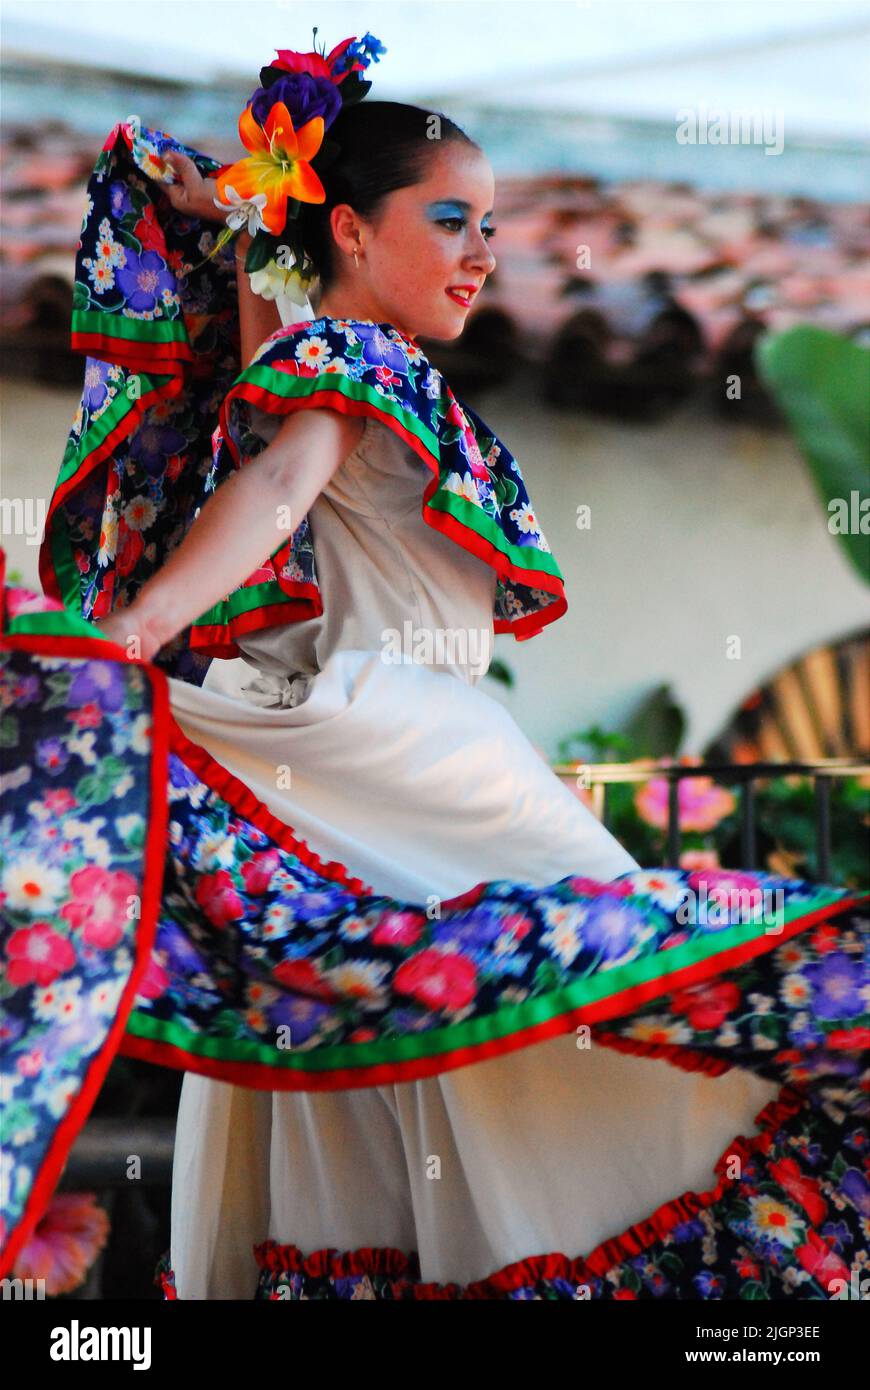 Una giovane donna che indossa un abito tradizionale partecipa ad uno spettacolo e ad uno spettacolo che mette in risalto la cultura della danza del Messico e della musica messicana Foto Stock